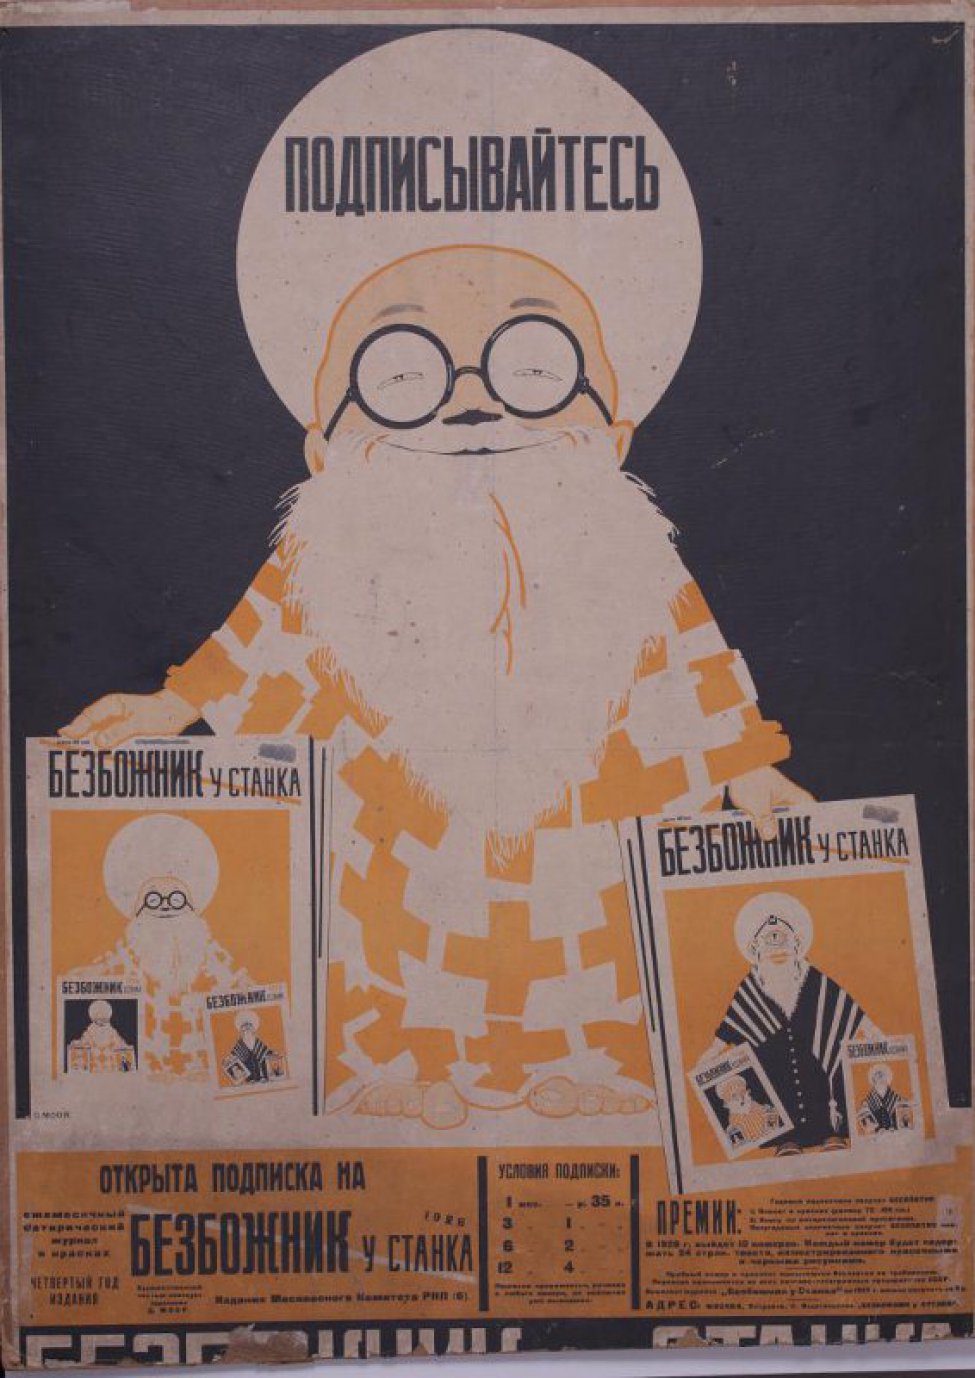 Изображен священние в желтой ризе, круглых очках и белой бородой. В обеих руках держит журнал " Безбожник у станка".